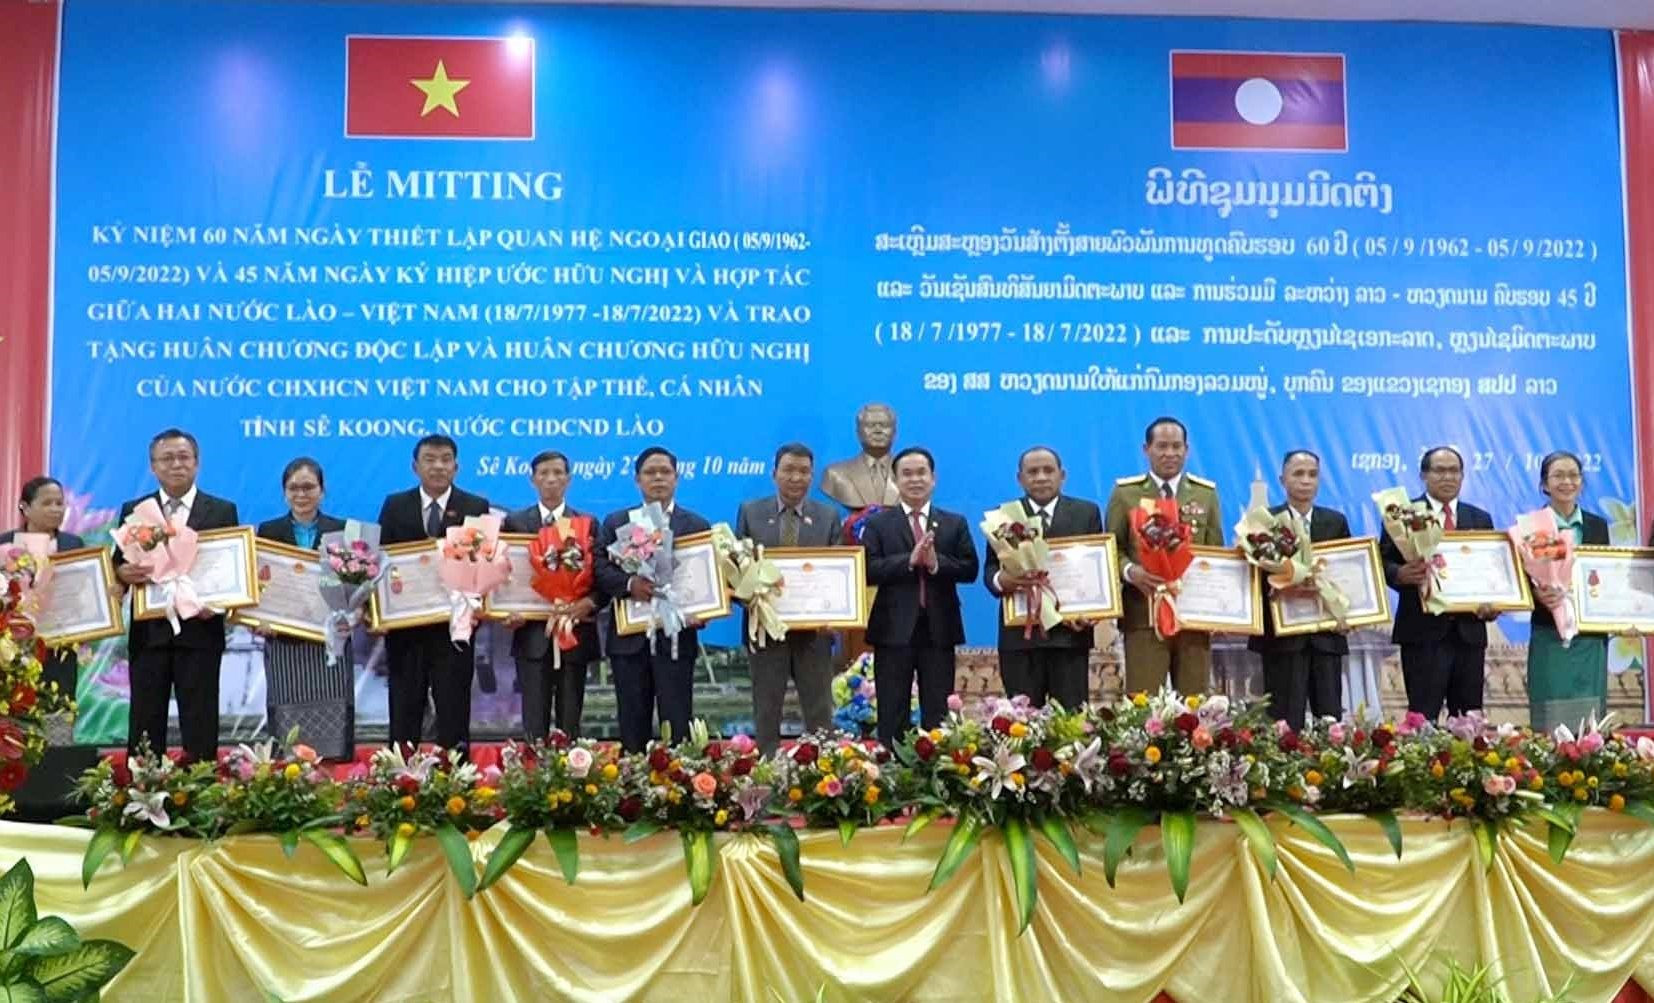 Đồng chí Trần Anh Tuấn trao tặng Huân chương Hữu nghị cho 13 tập thể và 1 cá nhân tỉnh Sê Kông